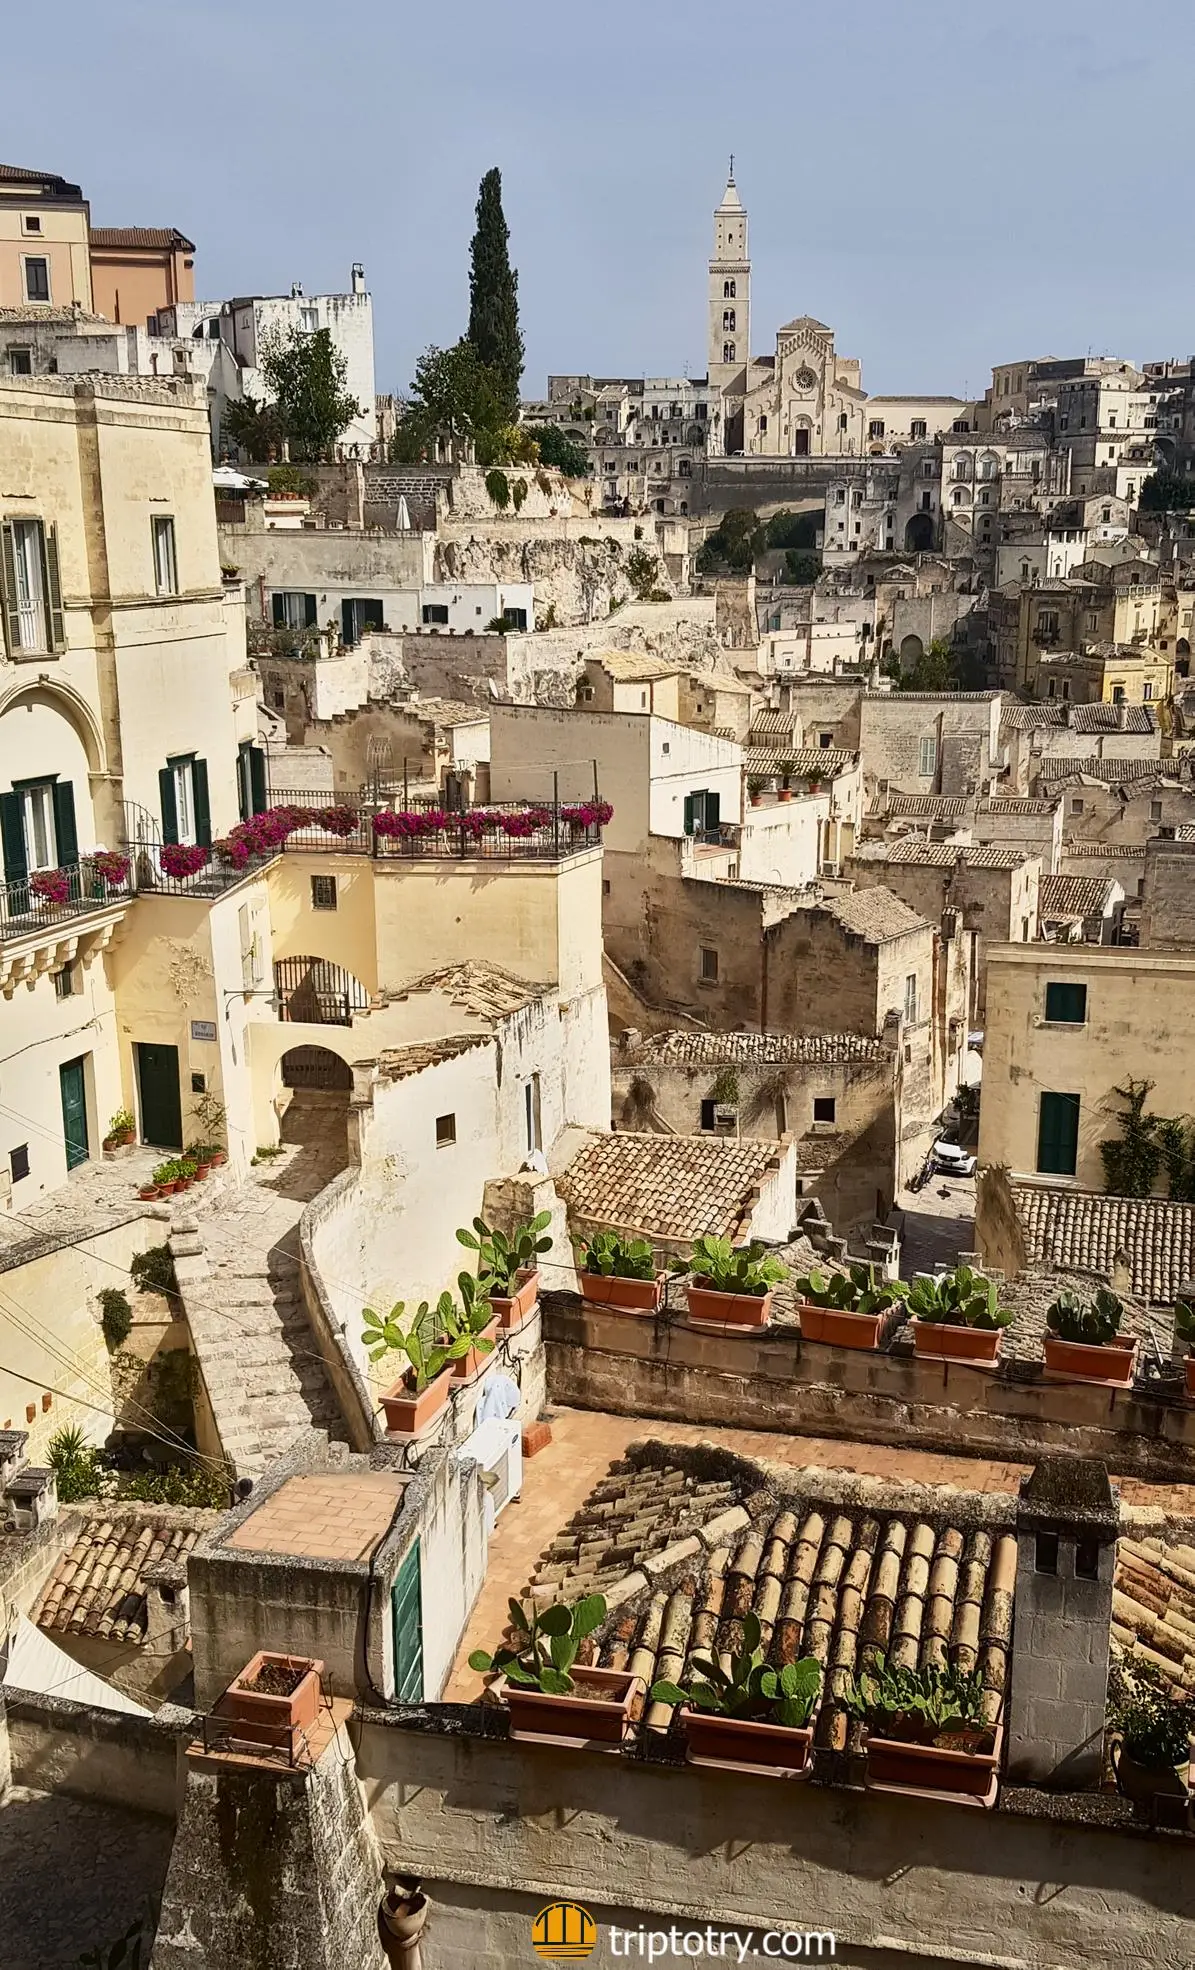 Visitare Matera 7 consigli utili - vista sul centro storico e sui sassi di Matera dall'alto - Matera Italy